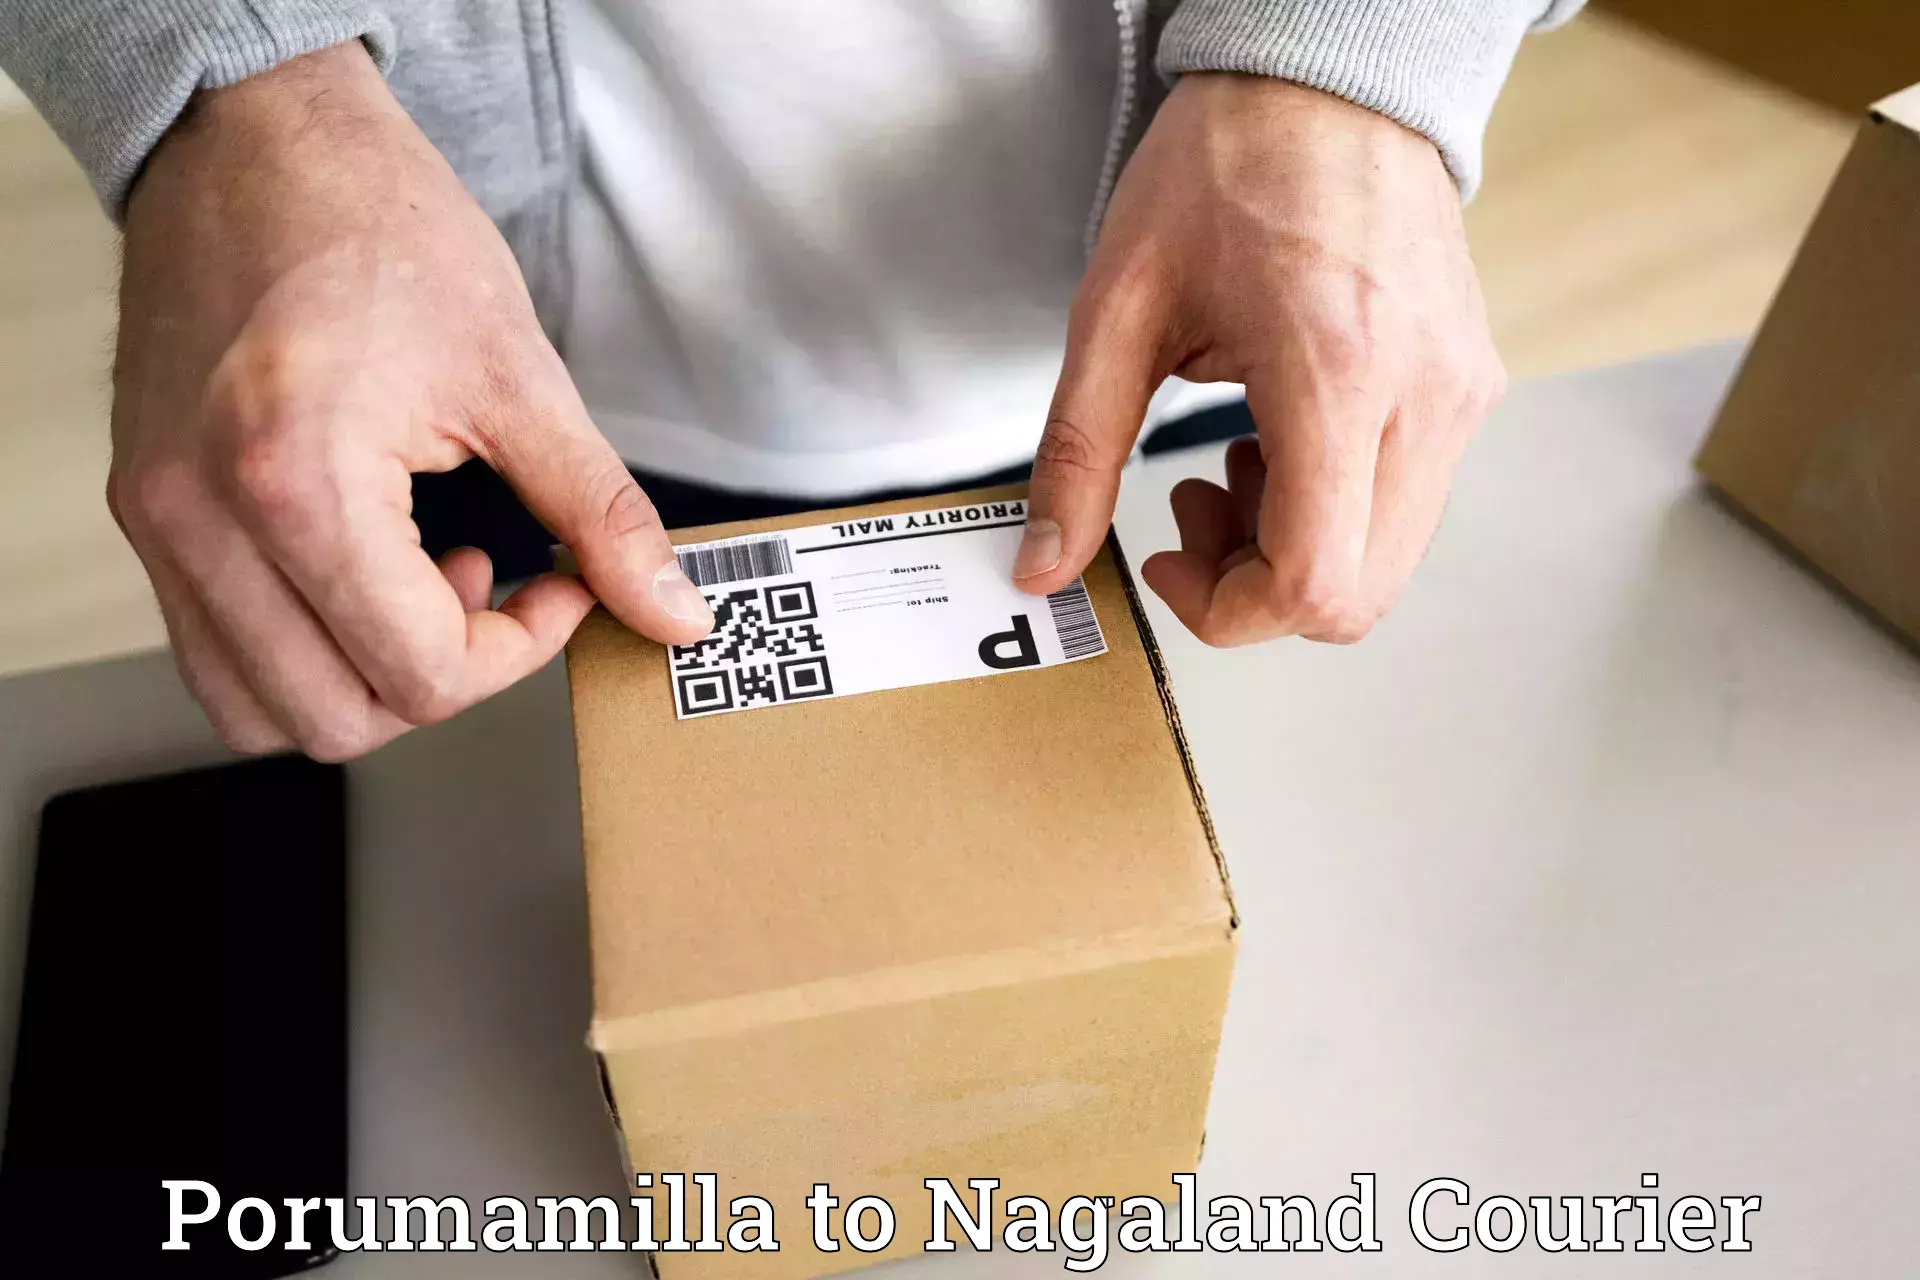 Rapid shipping services Porumamilla to NIT Nagaland